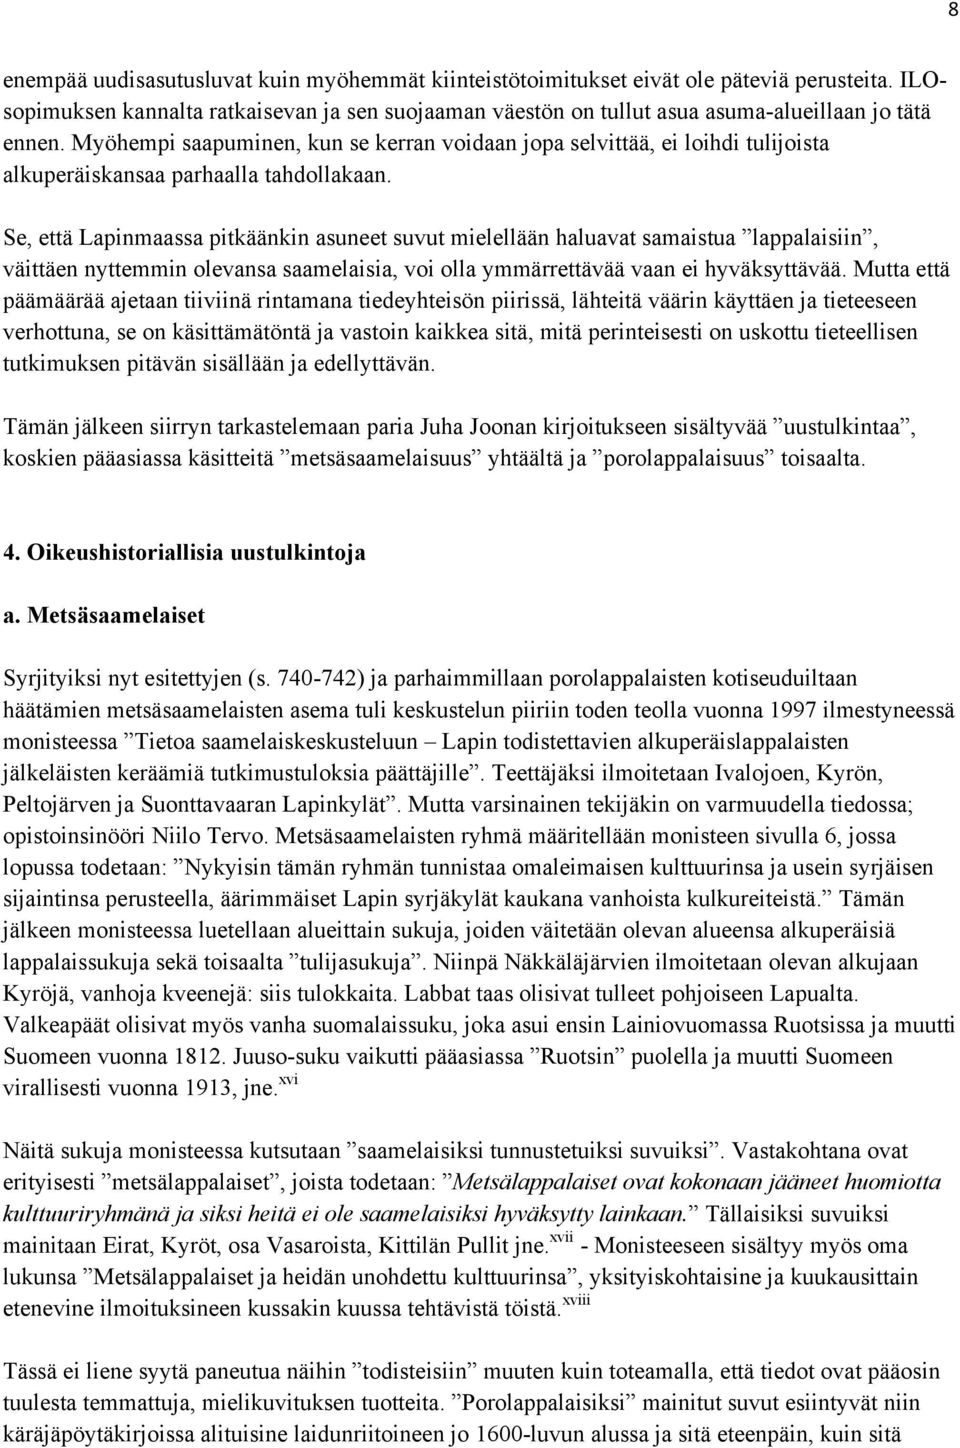 Se, että Lapinmaassa pitkäänkin asuneet suvut mielellään haluavat samaistua lappalaisiin, väittäen nyttemmin olevansa saamelaisia, voi olla ymmärrettävää vaan ei hyväksyttävää.